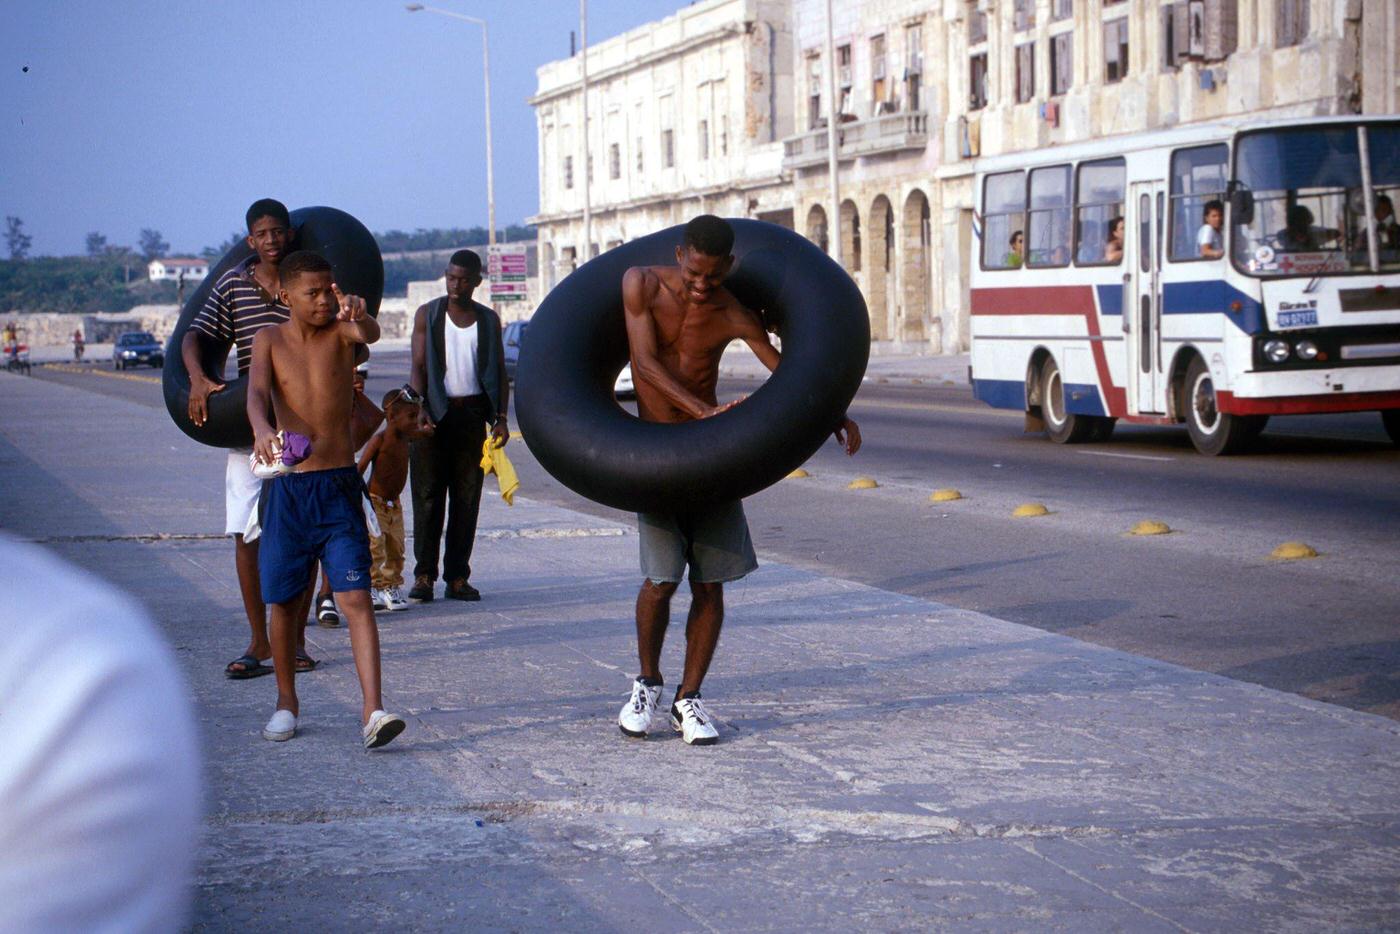 Cuban boys walking along Malecon promenade in Havana, carrying inner tire tubes, Cuba, 1990.